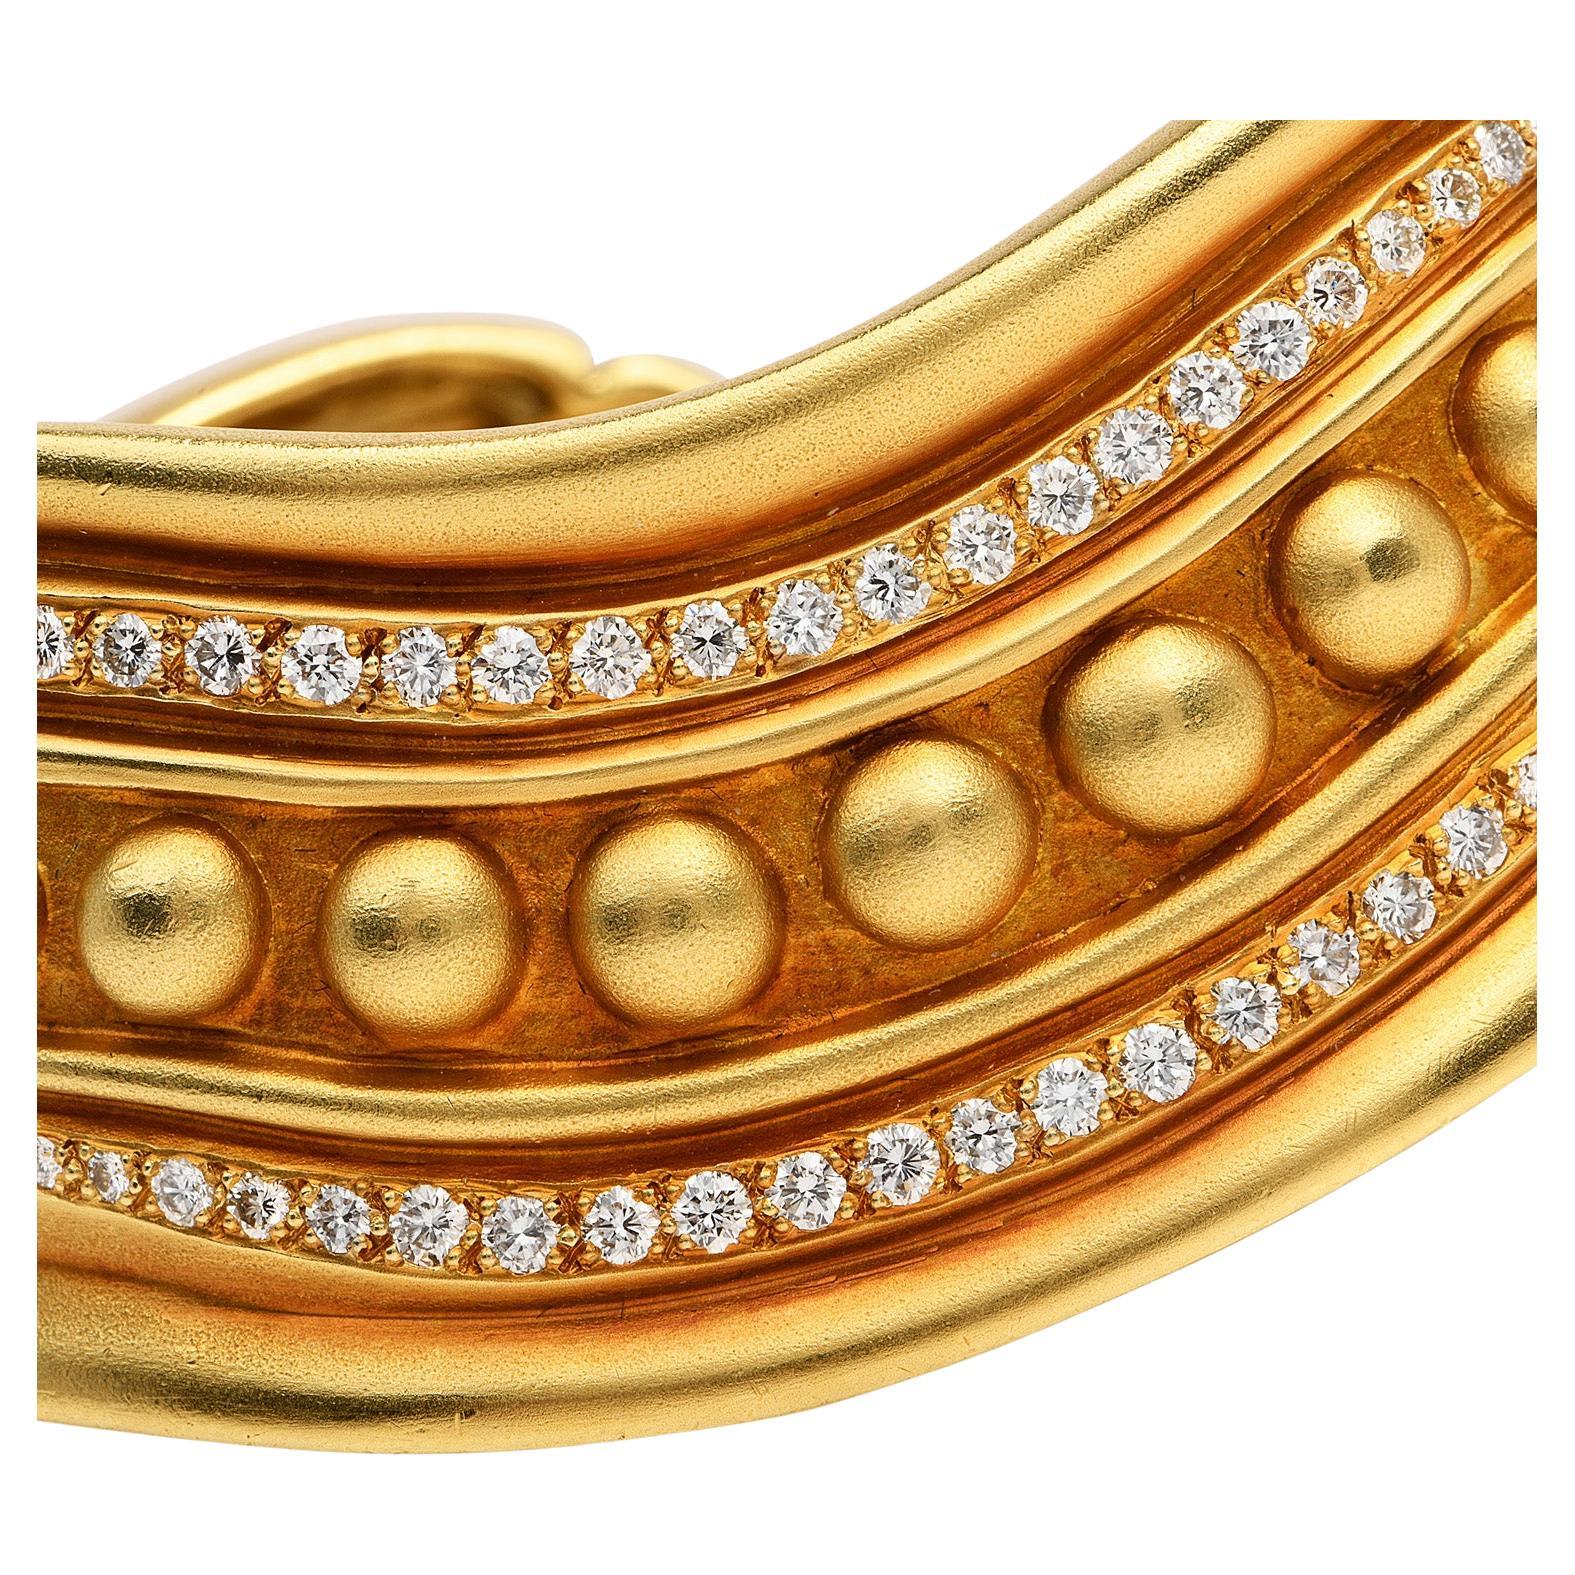 Le designer Vahe Naltchayan a créé dans les années 1980 un large bracelet manchette opulent,

Fabriqué en or jaune 18 carats massif, son centre est composé de 96 diamants ronds de style gradué, sertis sur des clous, pesant environ 3,00 carats